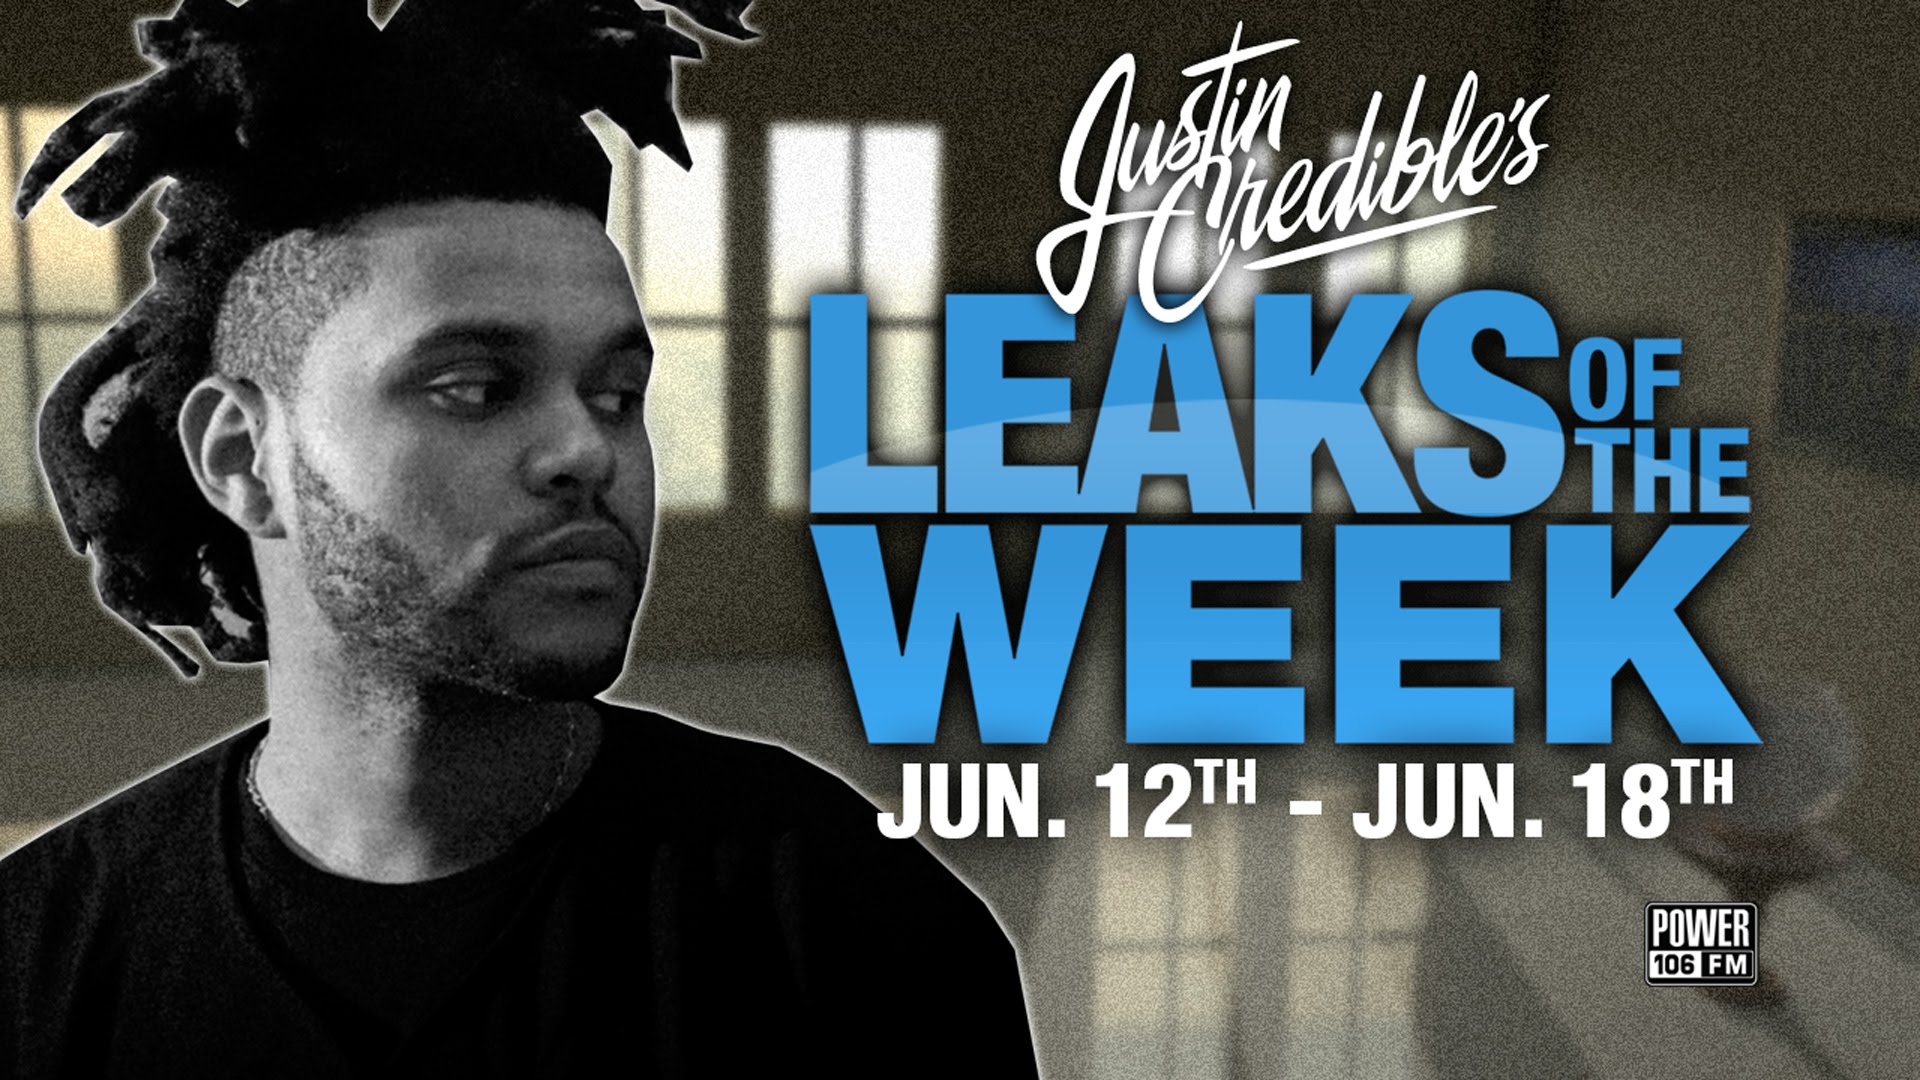 Justin Credible’s #LeaksOfTheWeek w/ The Weeknd, Statik Selektah, Action Bronson & Joey BAda$$ (Video)